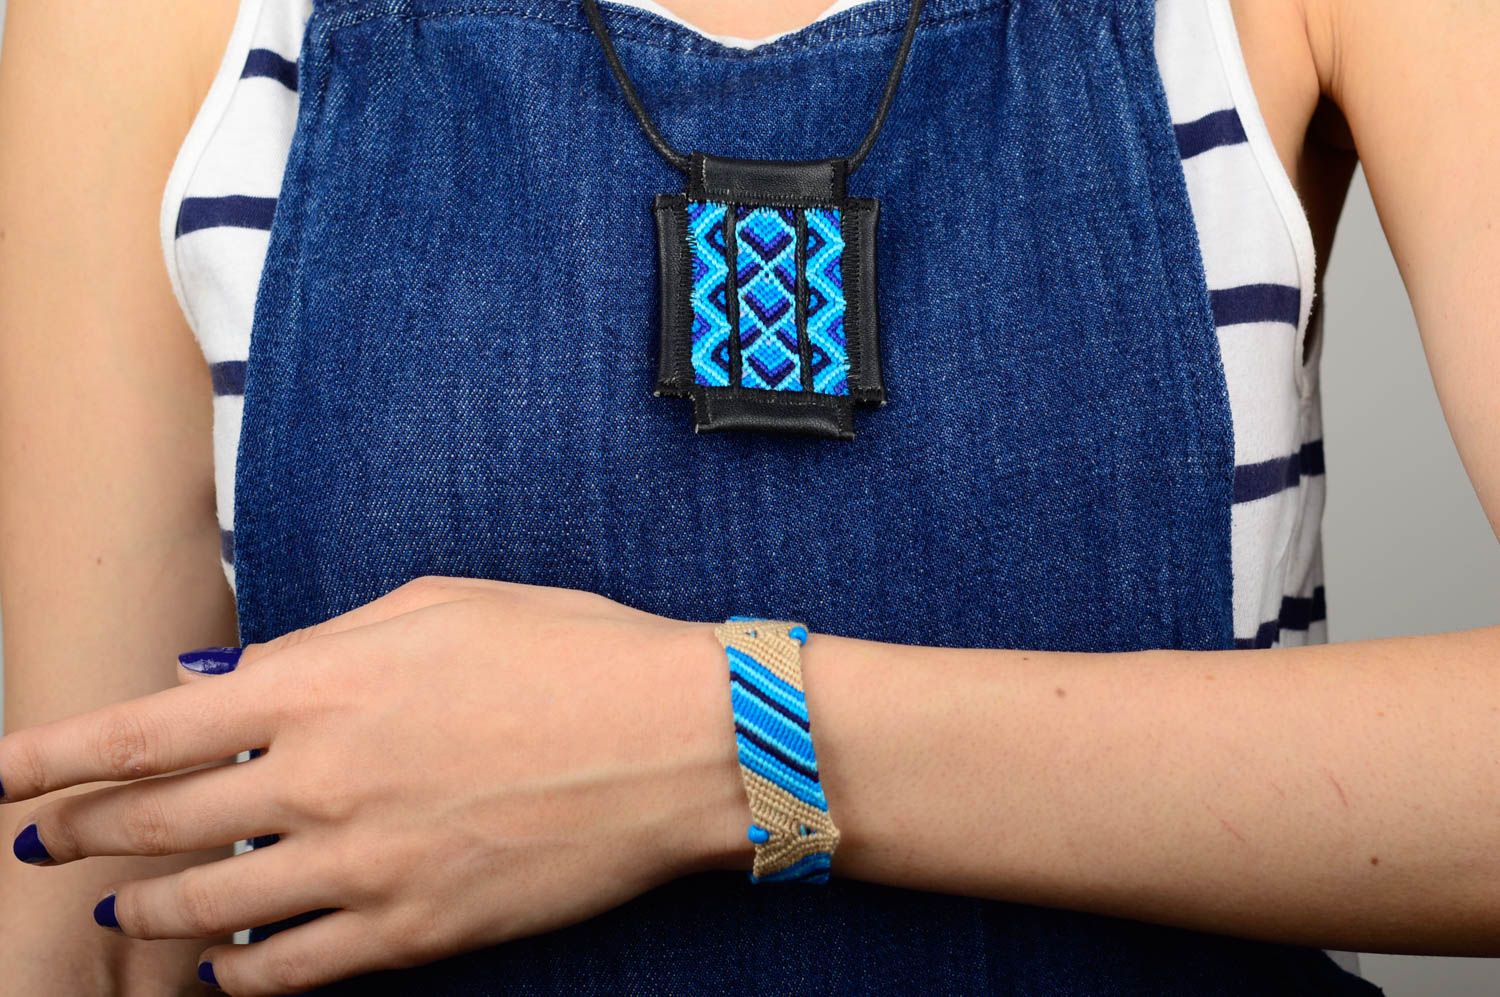 Macrame bijouterie handmade woven pendant friendship bracelet for women photo 5